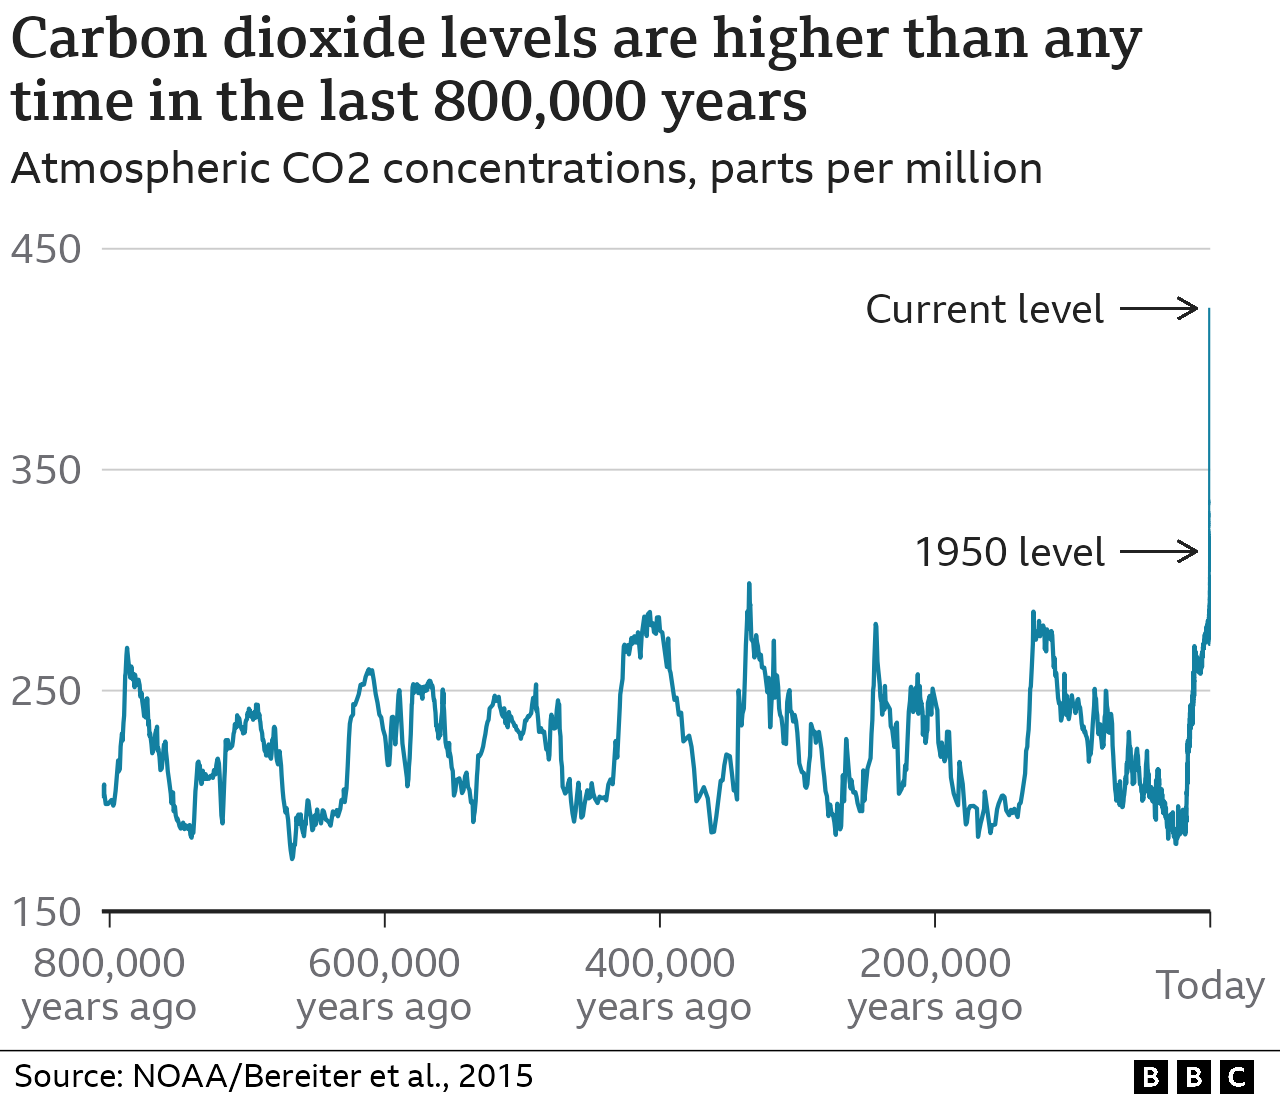 Durante los últimos 800.000 años, las concentraciones de CO2 en la atmósfera han fluctuado entre 180 y 300 partes por millón, siguiendo un patrón en dientes de sierra. En la actualidad, los niveles de CO2 superan las 420 partes por millón y han aumentado considerablemente en el último siglo (una línea casi vertical en el gráfico).